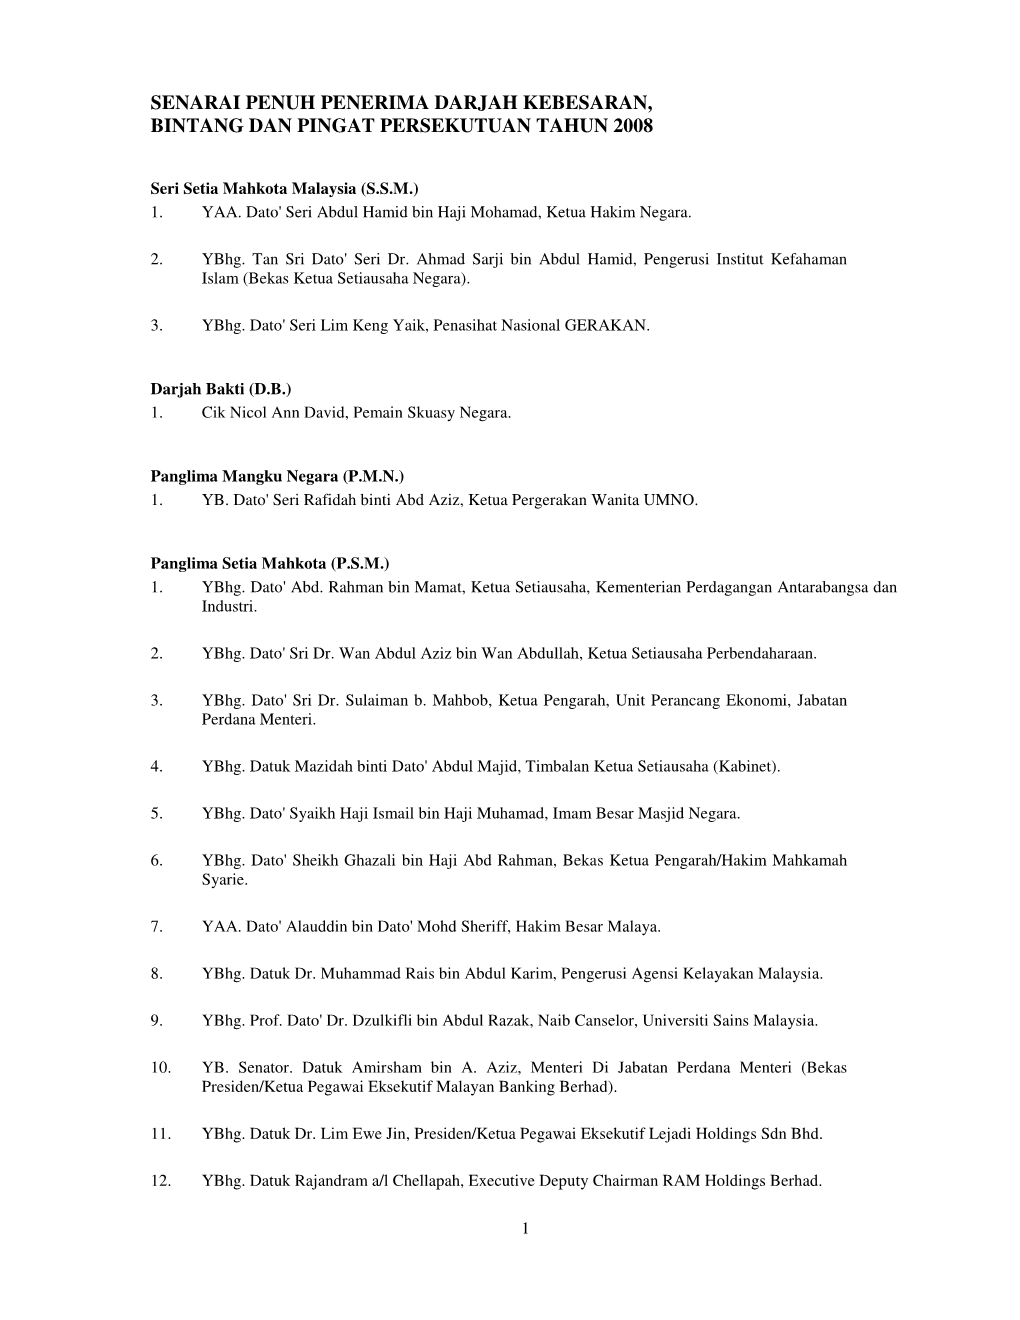 Senarai Penuh Penerima Darjah Kebesaran, Bintang Dan Pingat Persekutuan Tahun 2008